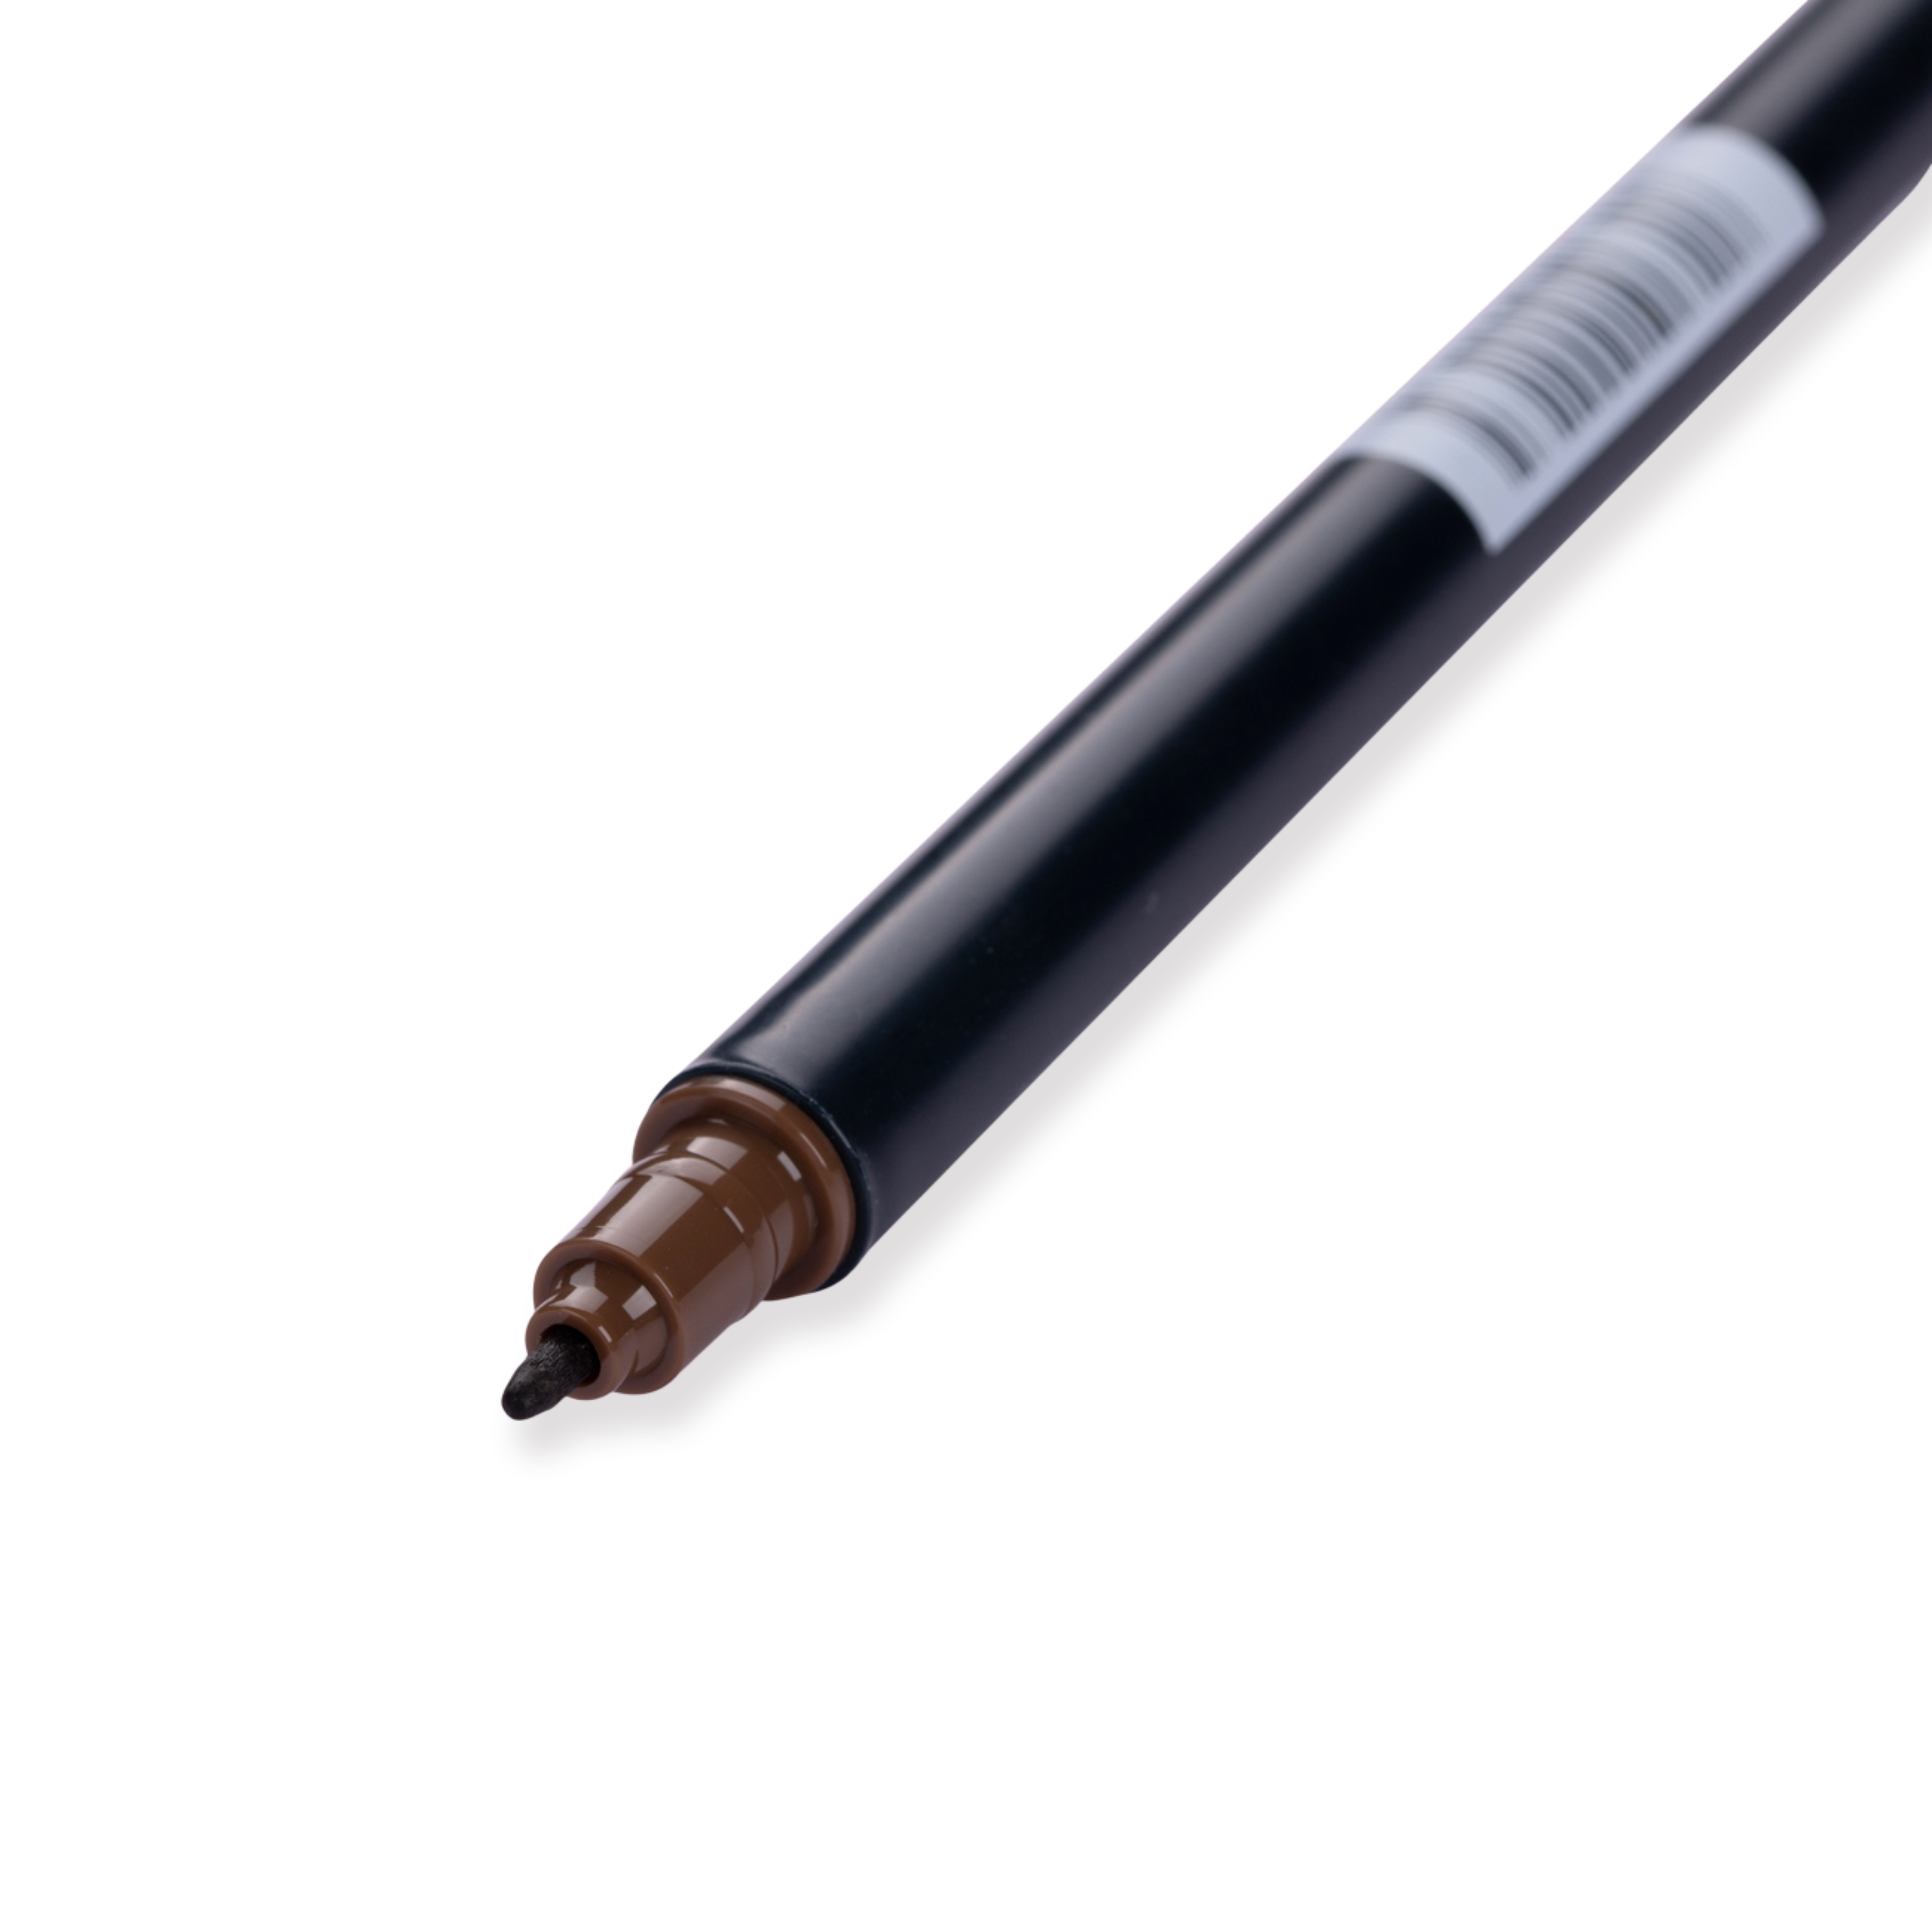 Tombow Dual Brush Pen - 969 - Schokolade